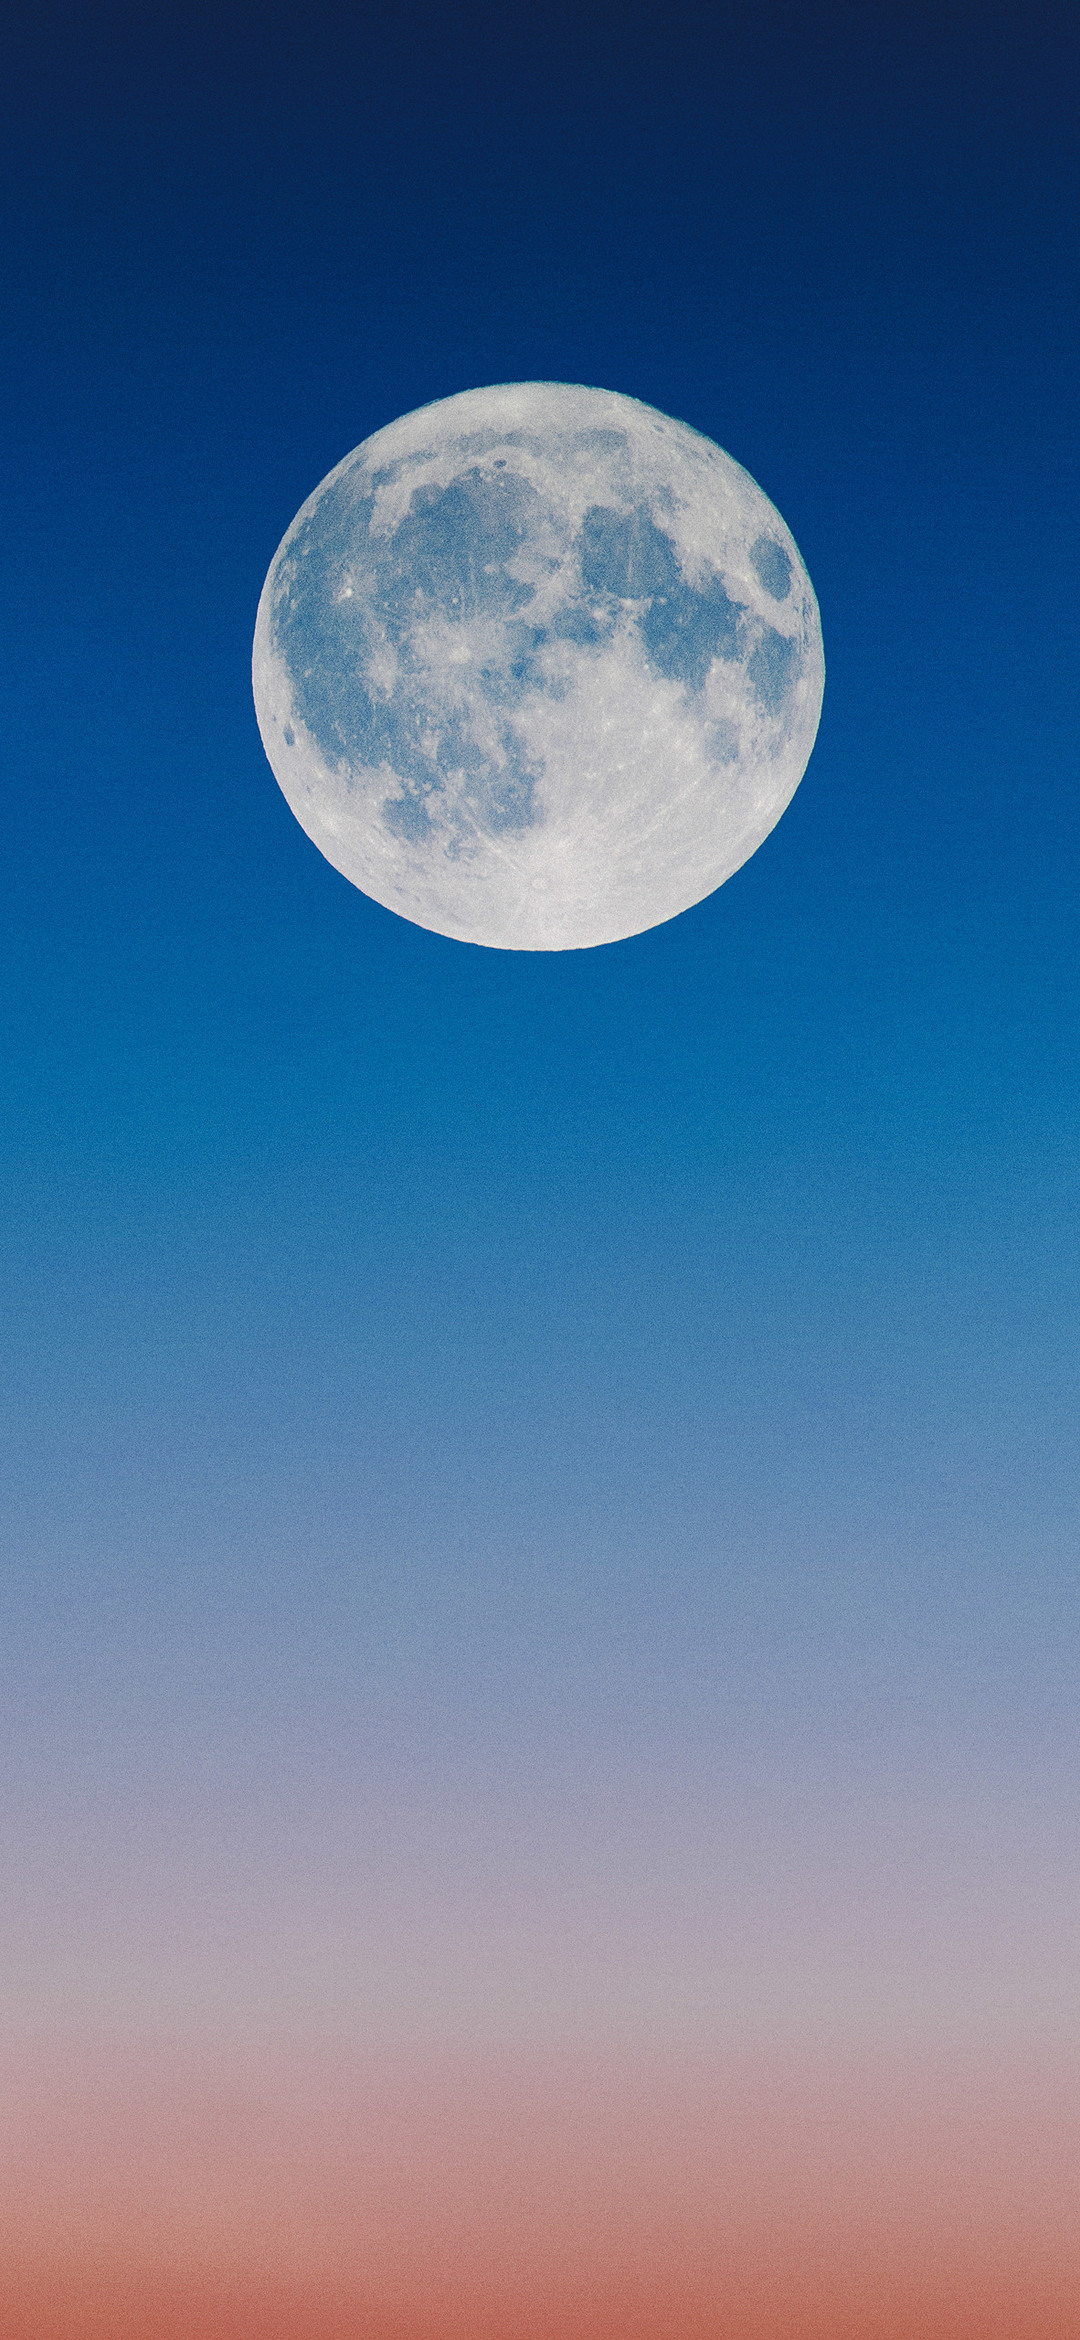 綺麗な満月と夜空 Google Pixel 5 Android スマホ壁紙 待ち受け スマラン